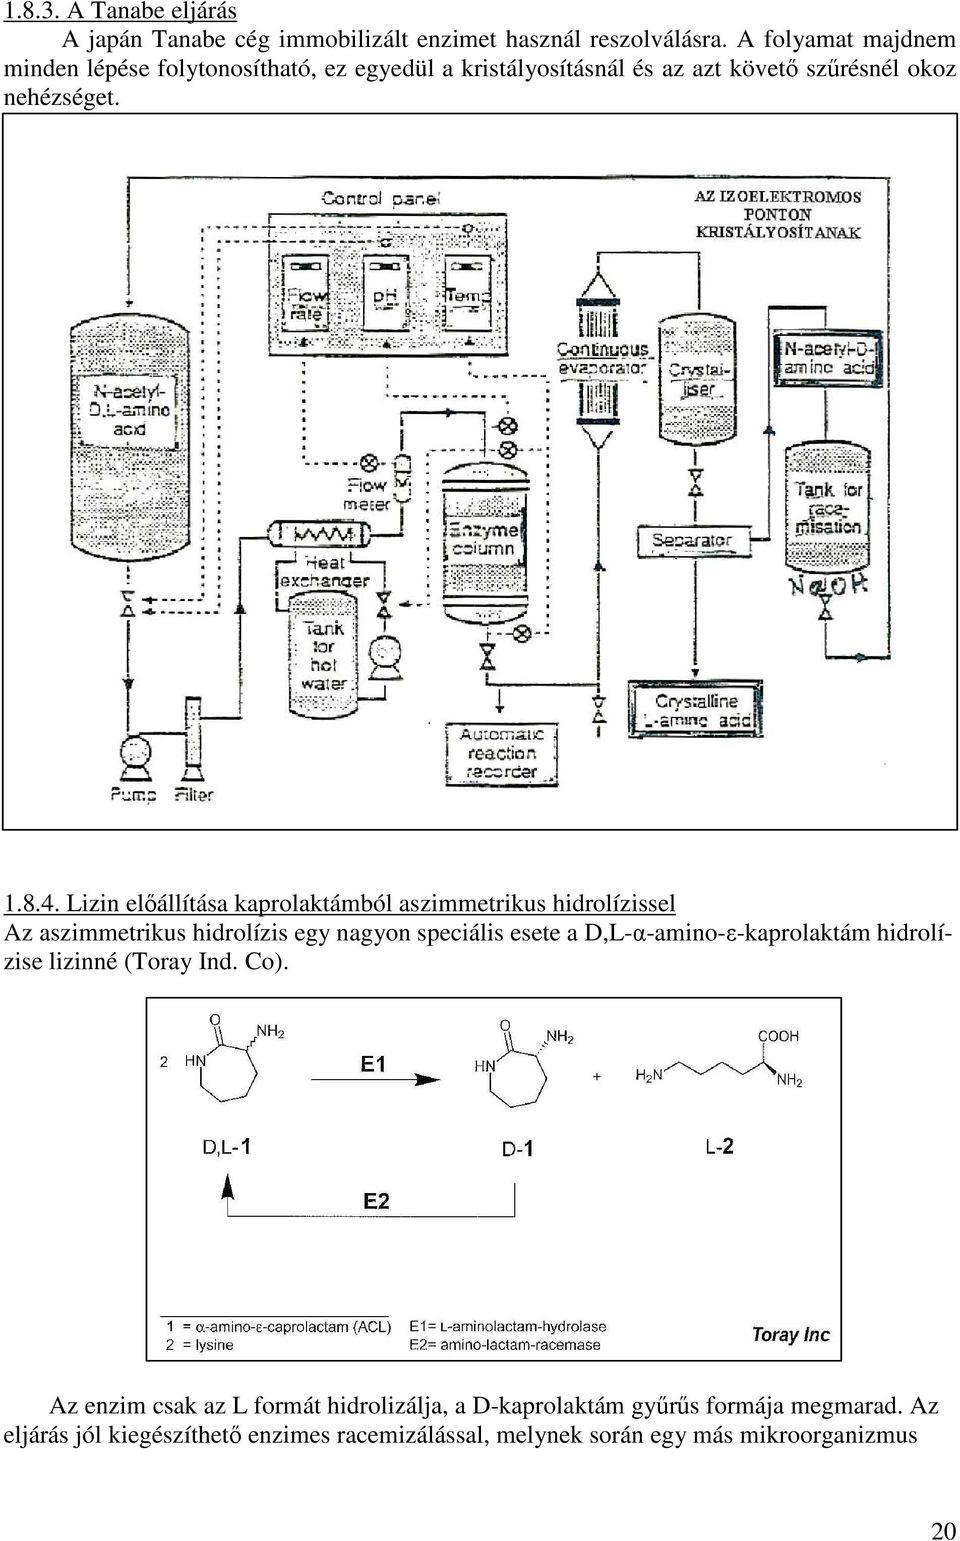 Lizin előállítása kaprolaktámból aszimmetrikus hidrolízissel Az aszimmetrikus hidrolízis egy nagyon speciális esete a D,L-α-amino-ε-kaprolaktám